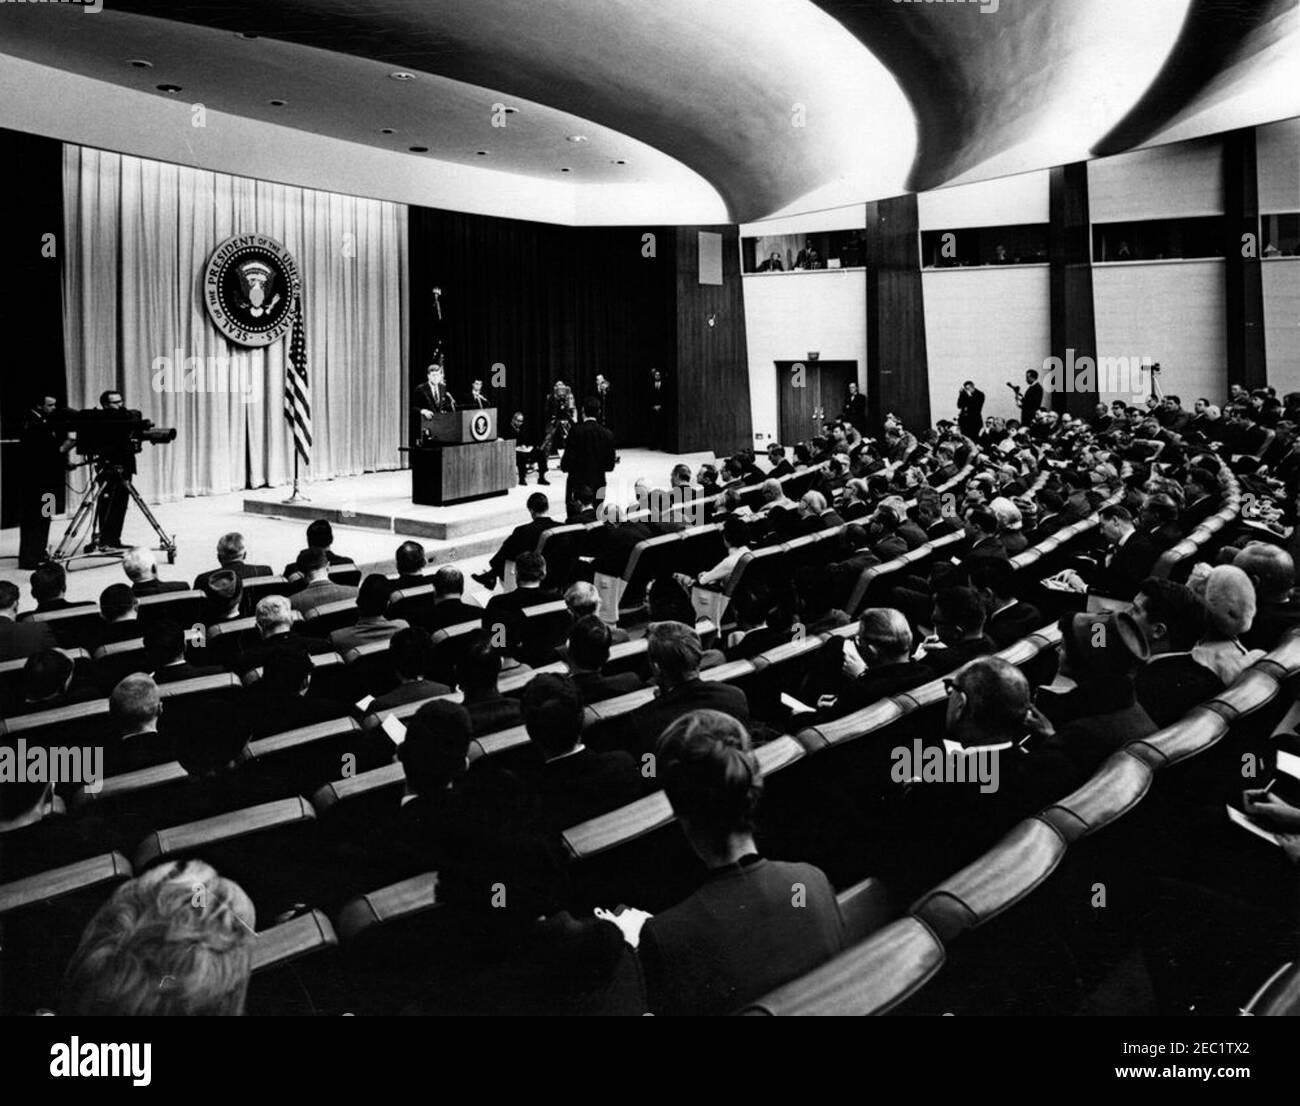 Conferencia de prensa, Auditorio del Departamento de Estado, 4:00PM. El Presidente John F. Kennedy (en la conferencia) habla con los reporteros durante una conferencia de prensa en el Auditorio del Departamento de Estado, Washington, D.C., el Secretario de Prensa asociado Andrew Hatcher está sentado en el escenario, a la derecha del atril. Foto de stock